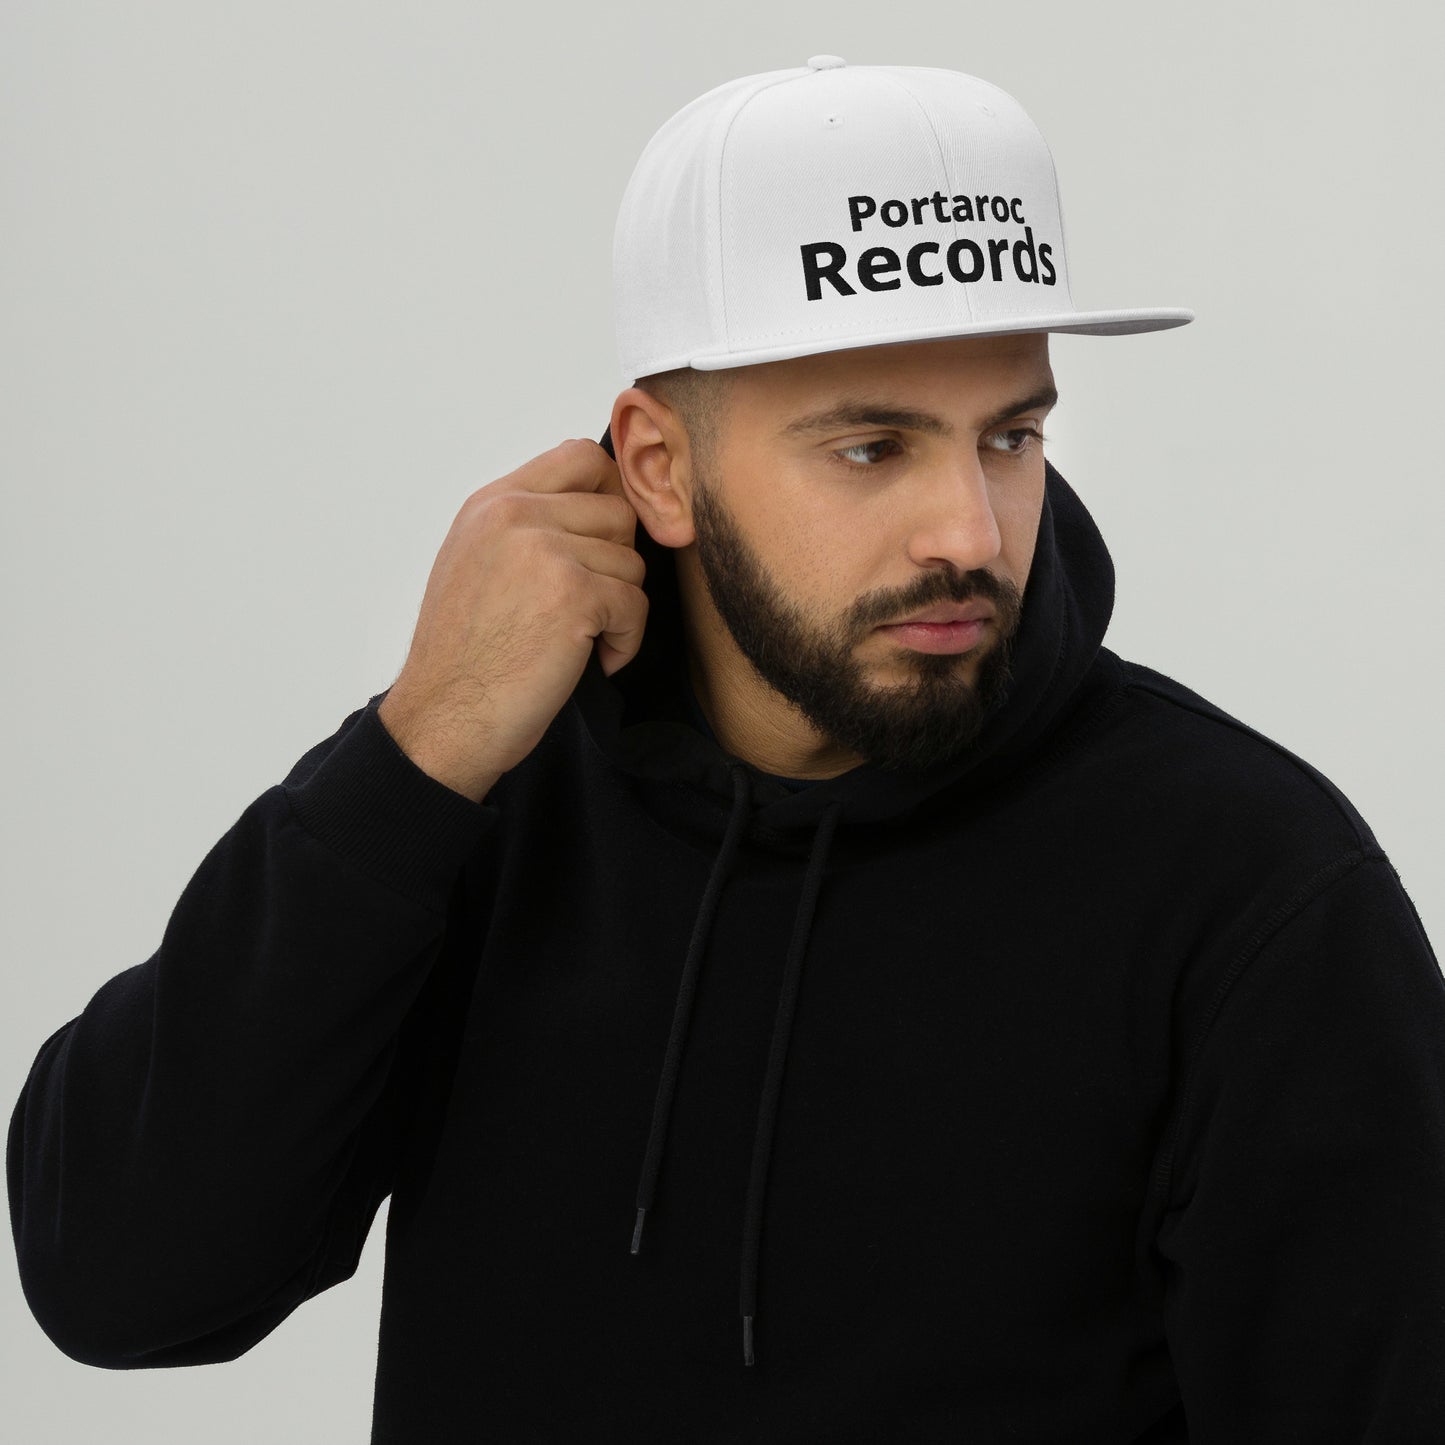 Portaroc Records Snapback Hat